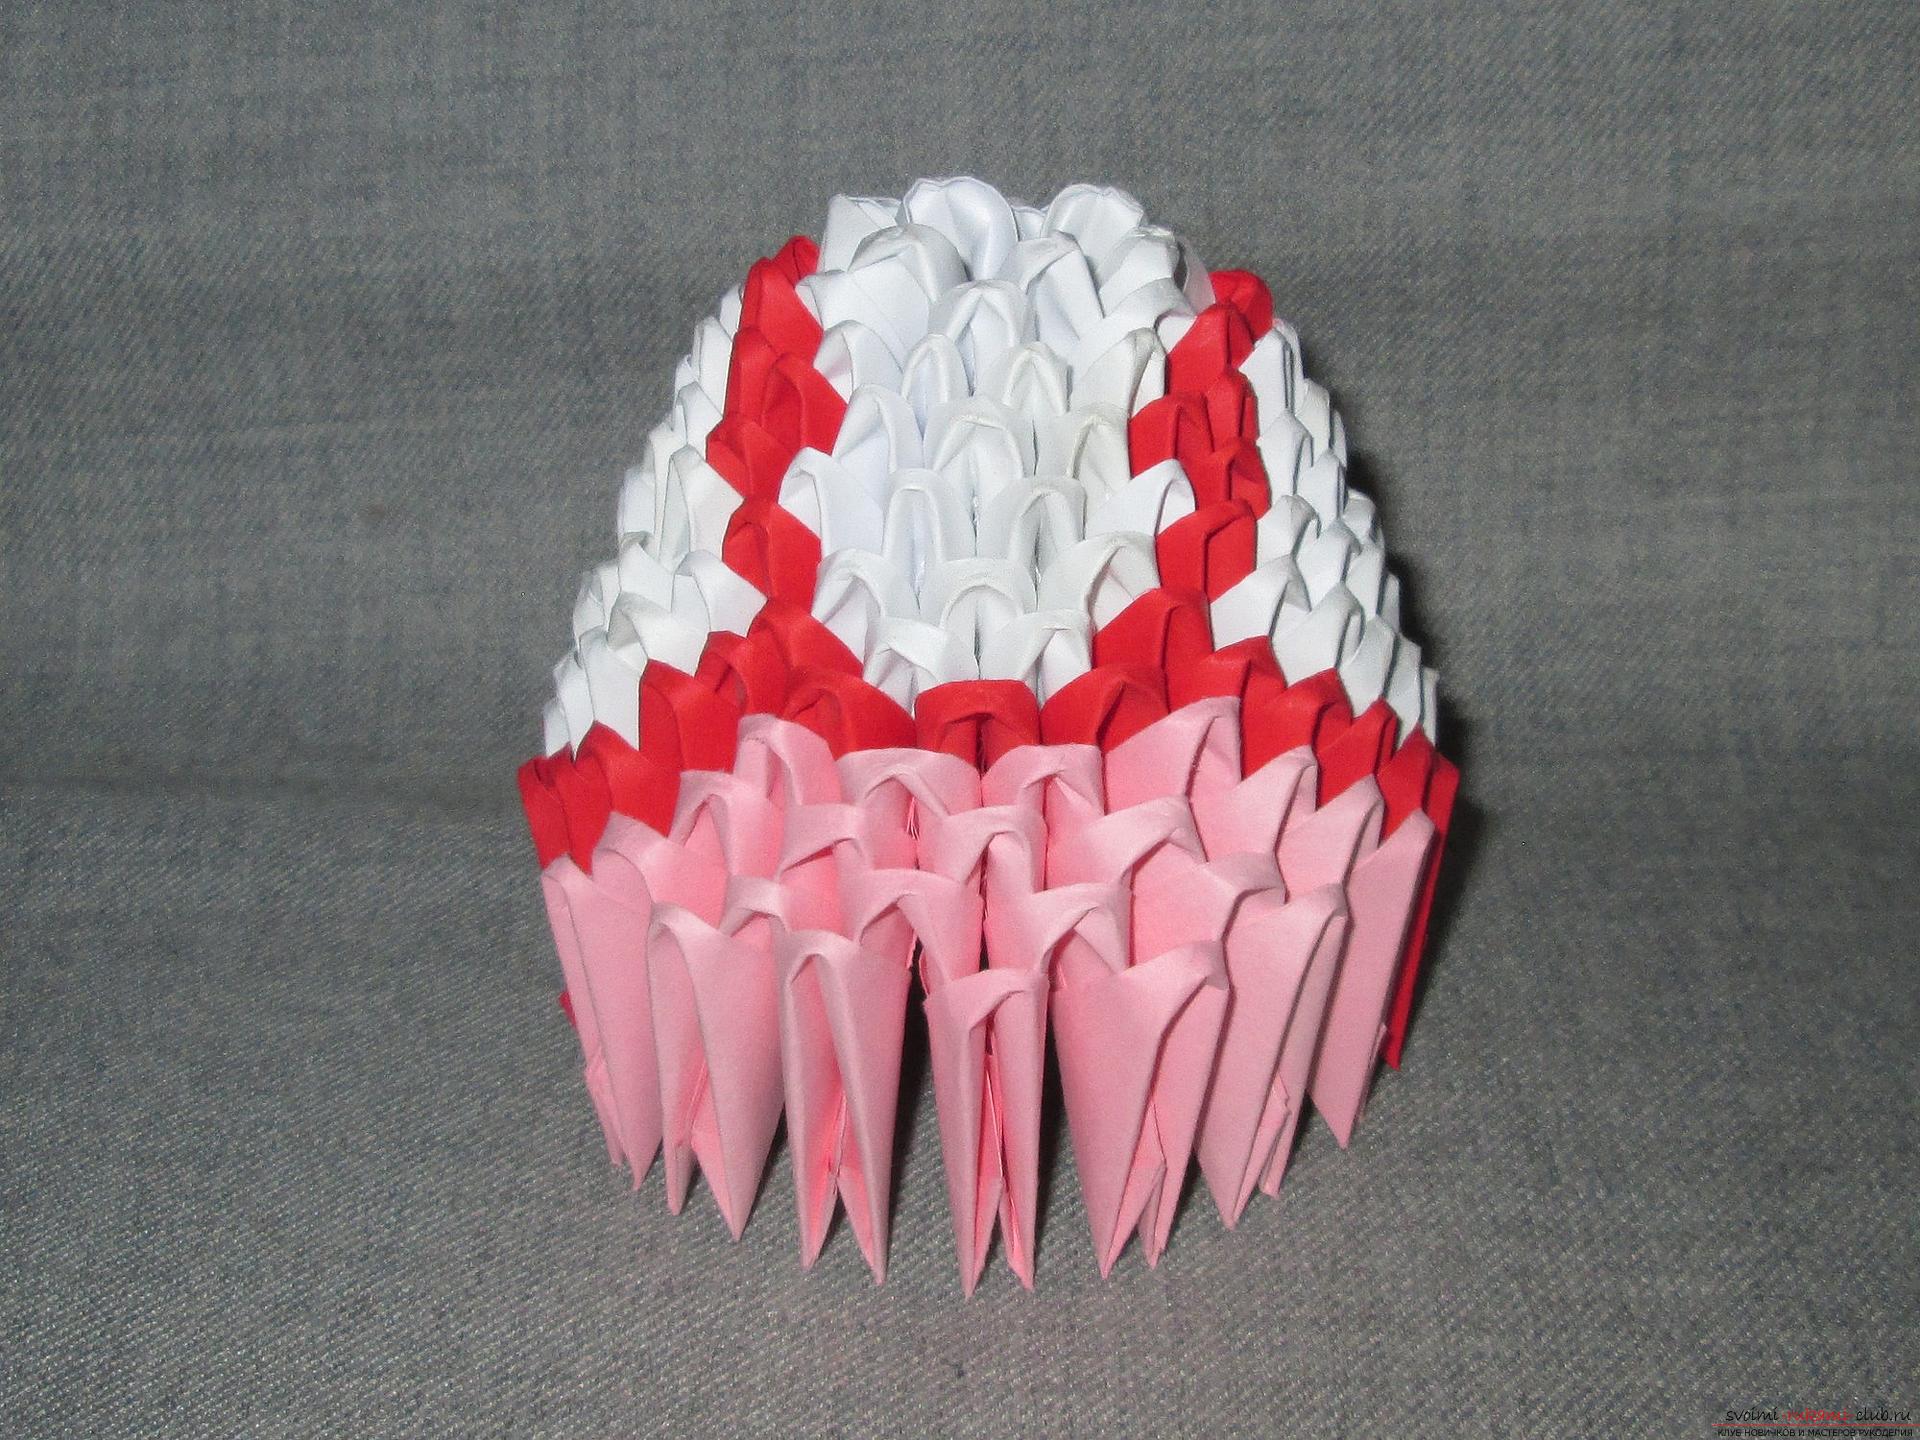 Этот мастер-класс расскажет как сделать своими руками из модульных оригами из бумаги русскую красавицу.. Фото №18